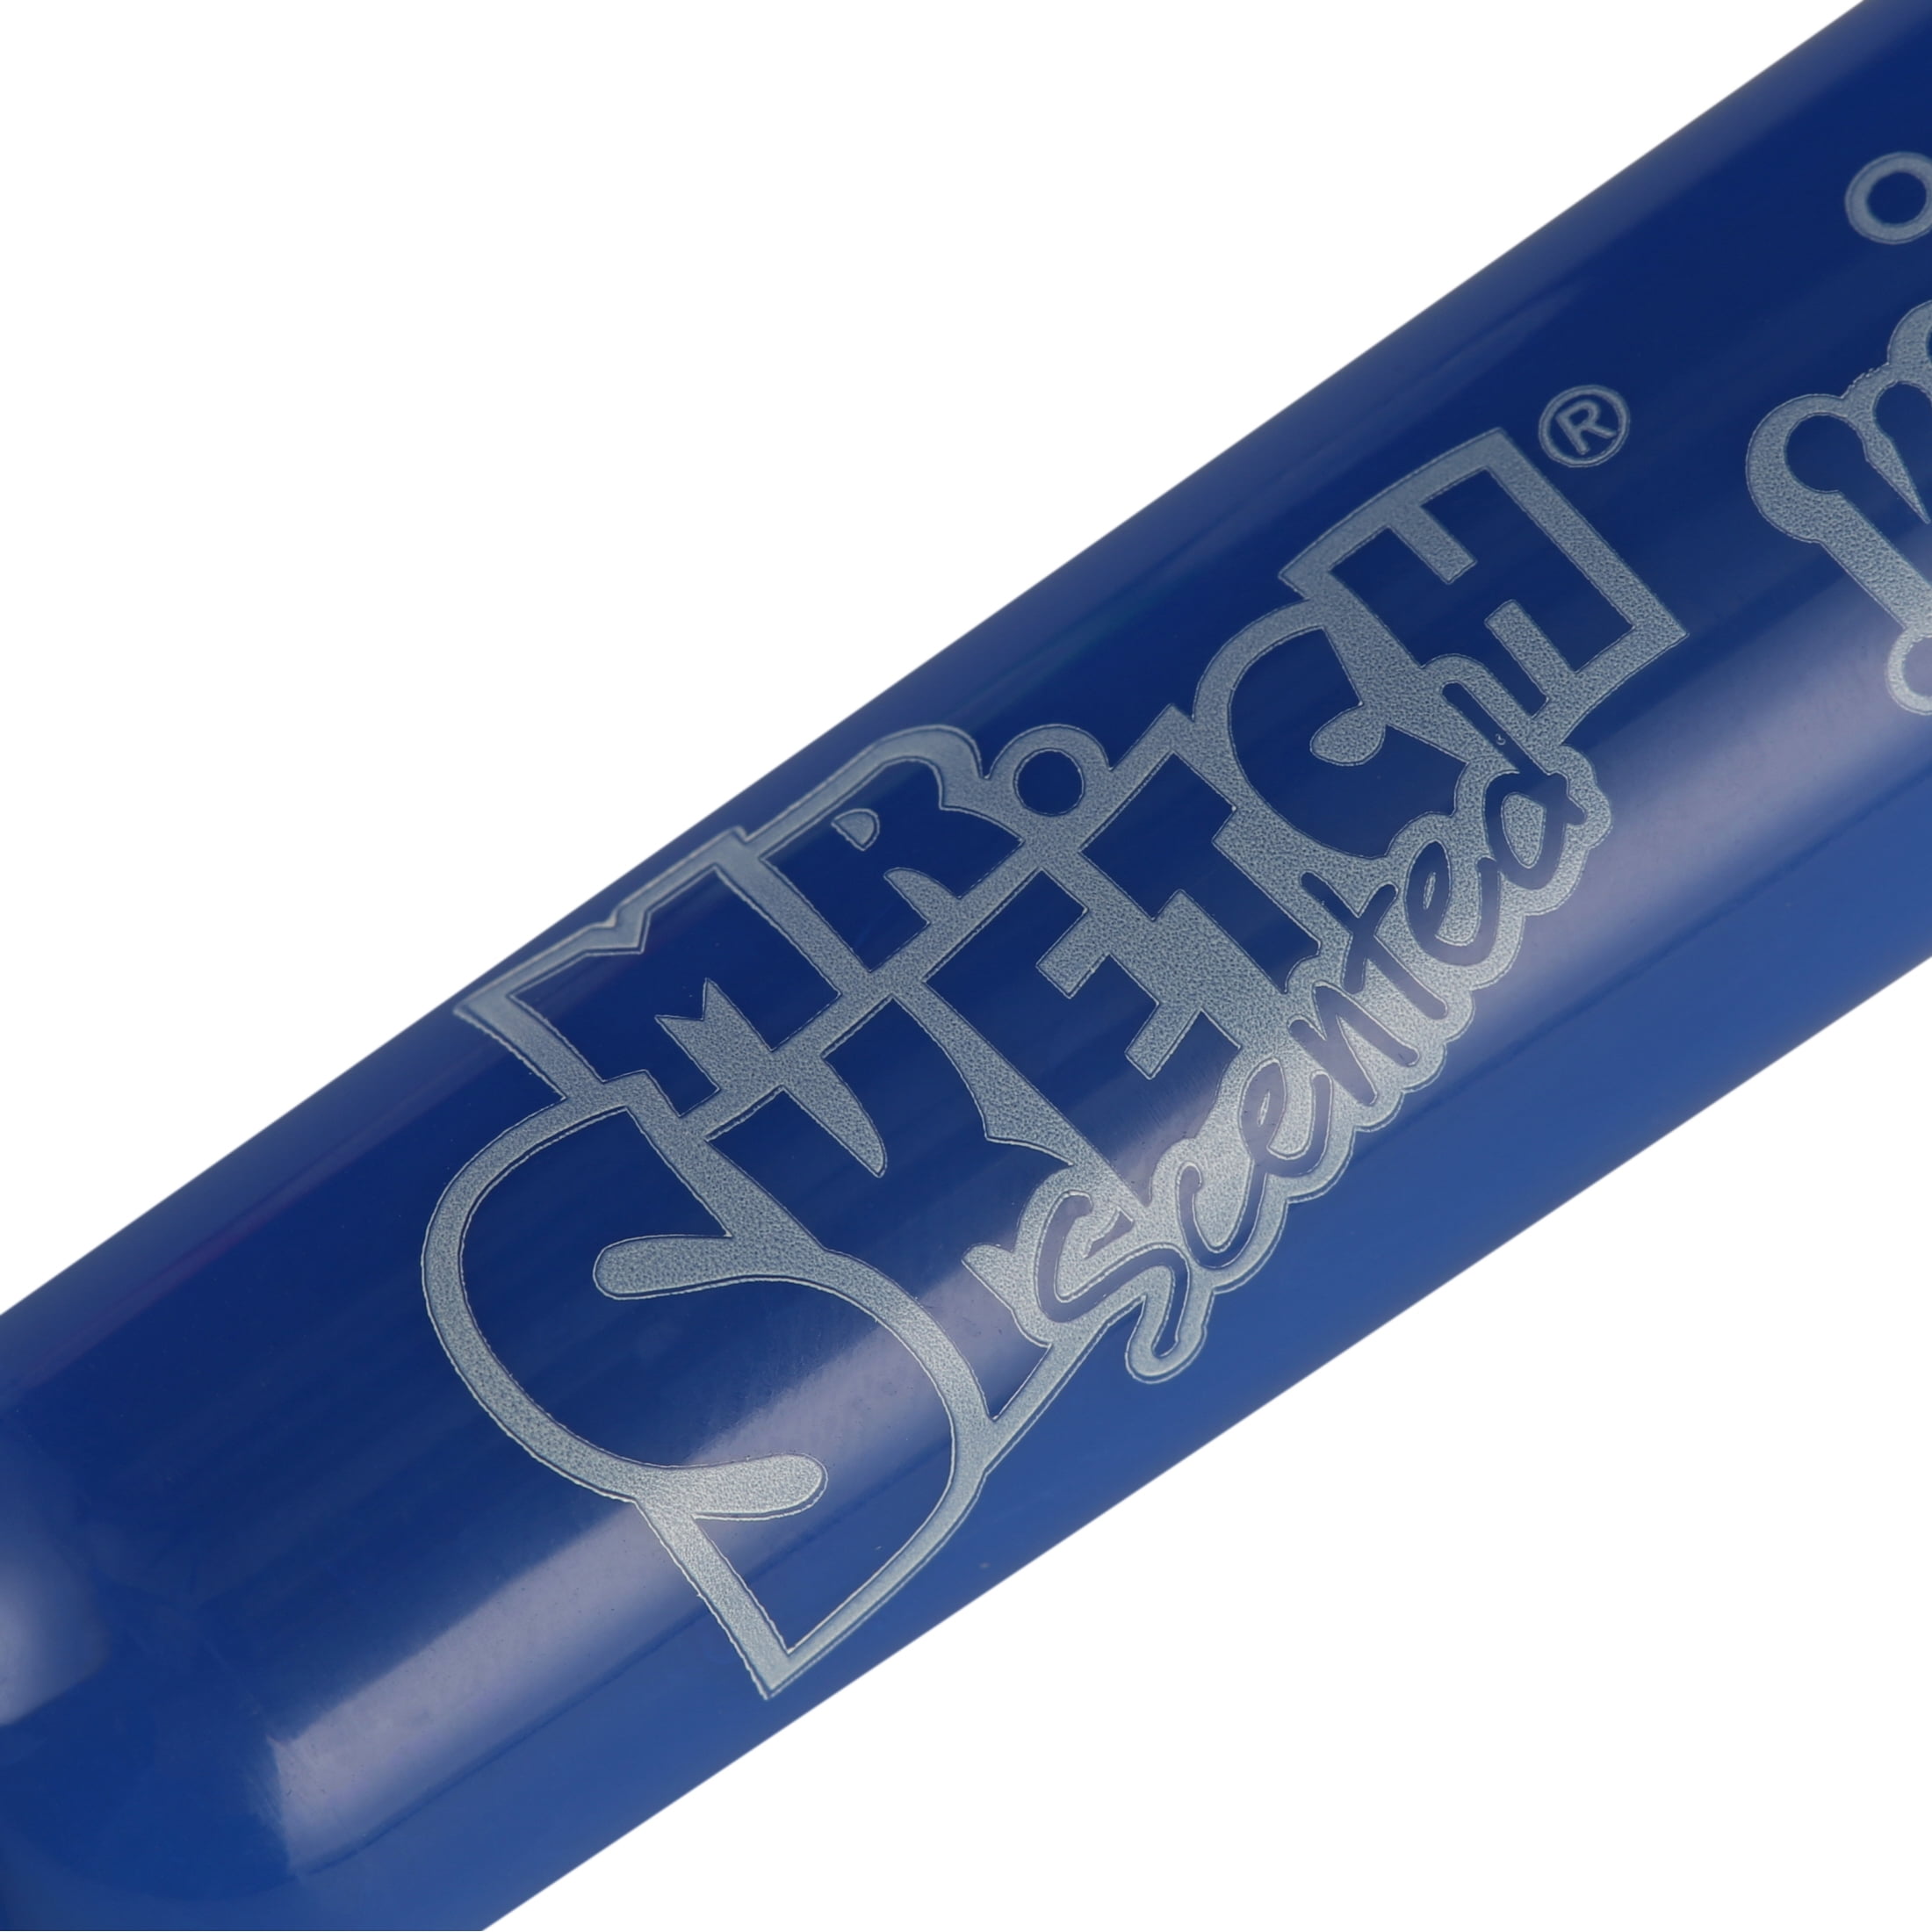 Mr. Sketch Blue Slushy Scented Marker Chisel Tip 1906488Pens and Pencils